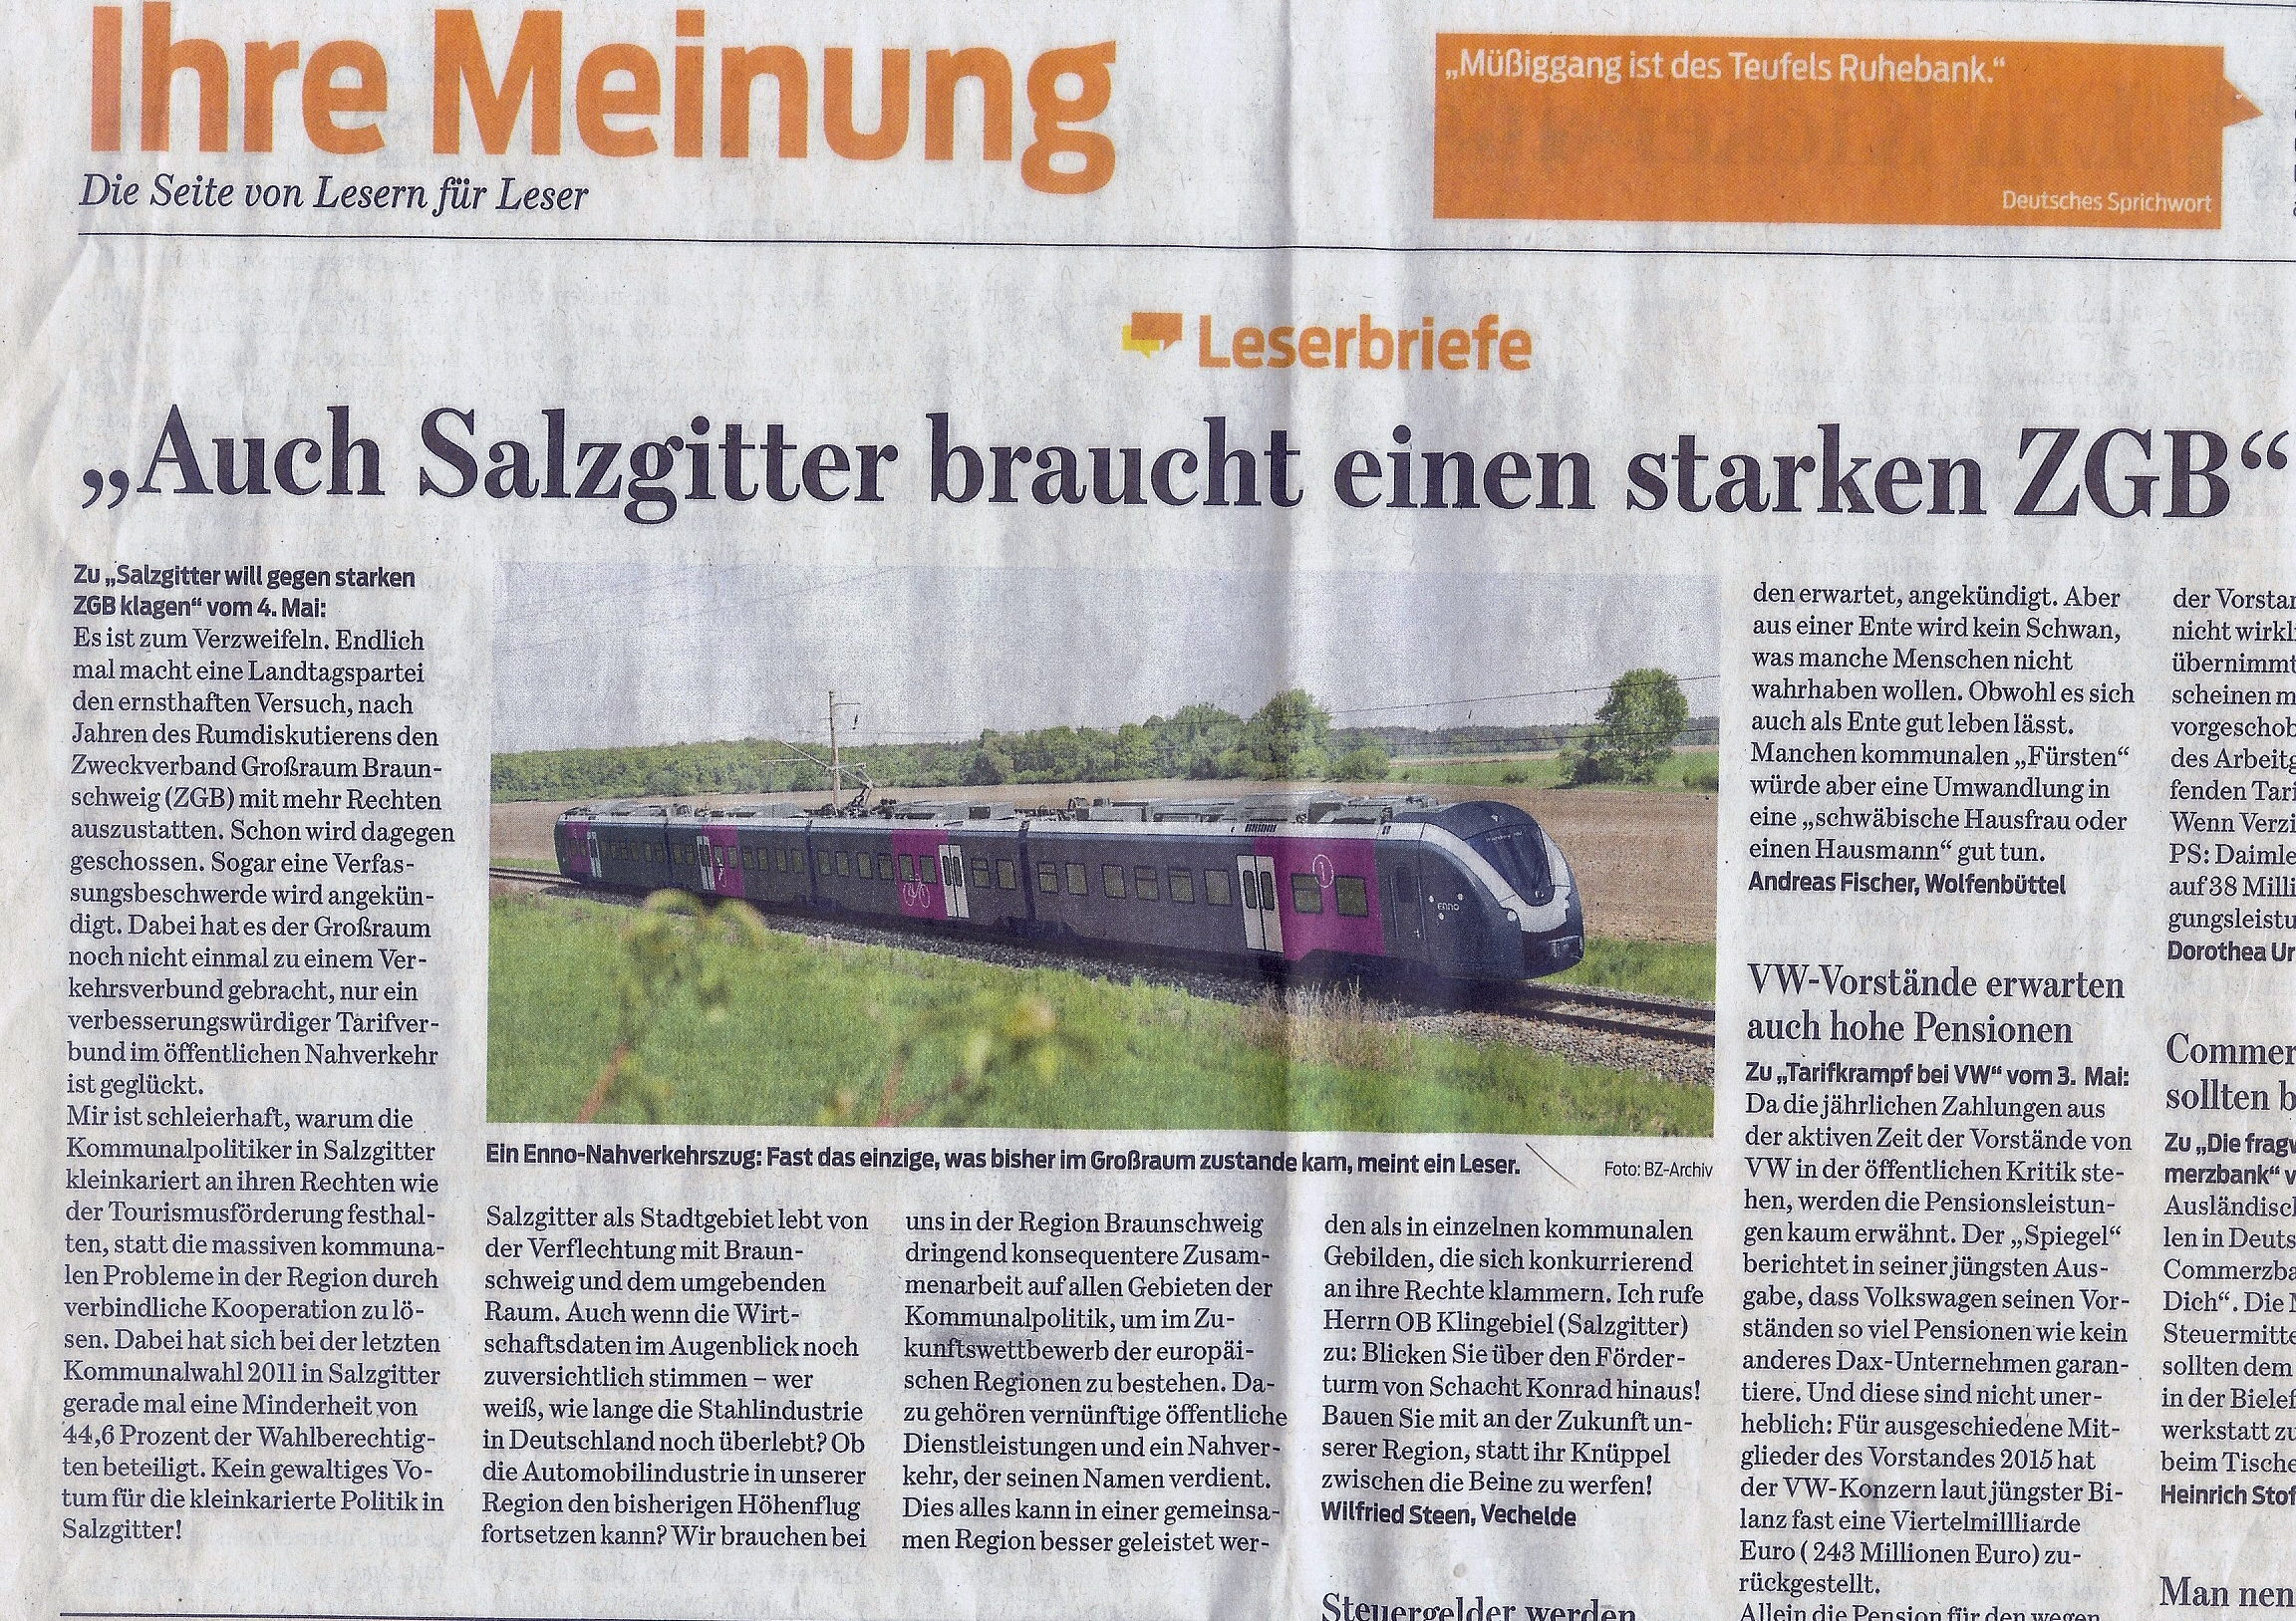 Mein Leserbrief in der Braunschweiger Zeitung am 7. Mai 2016